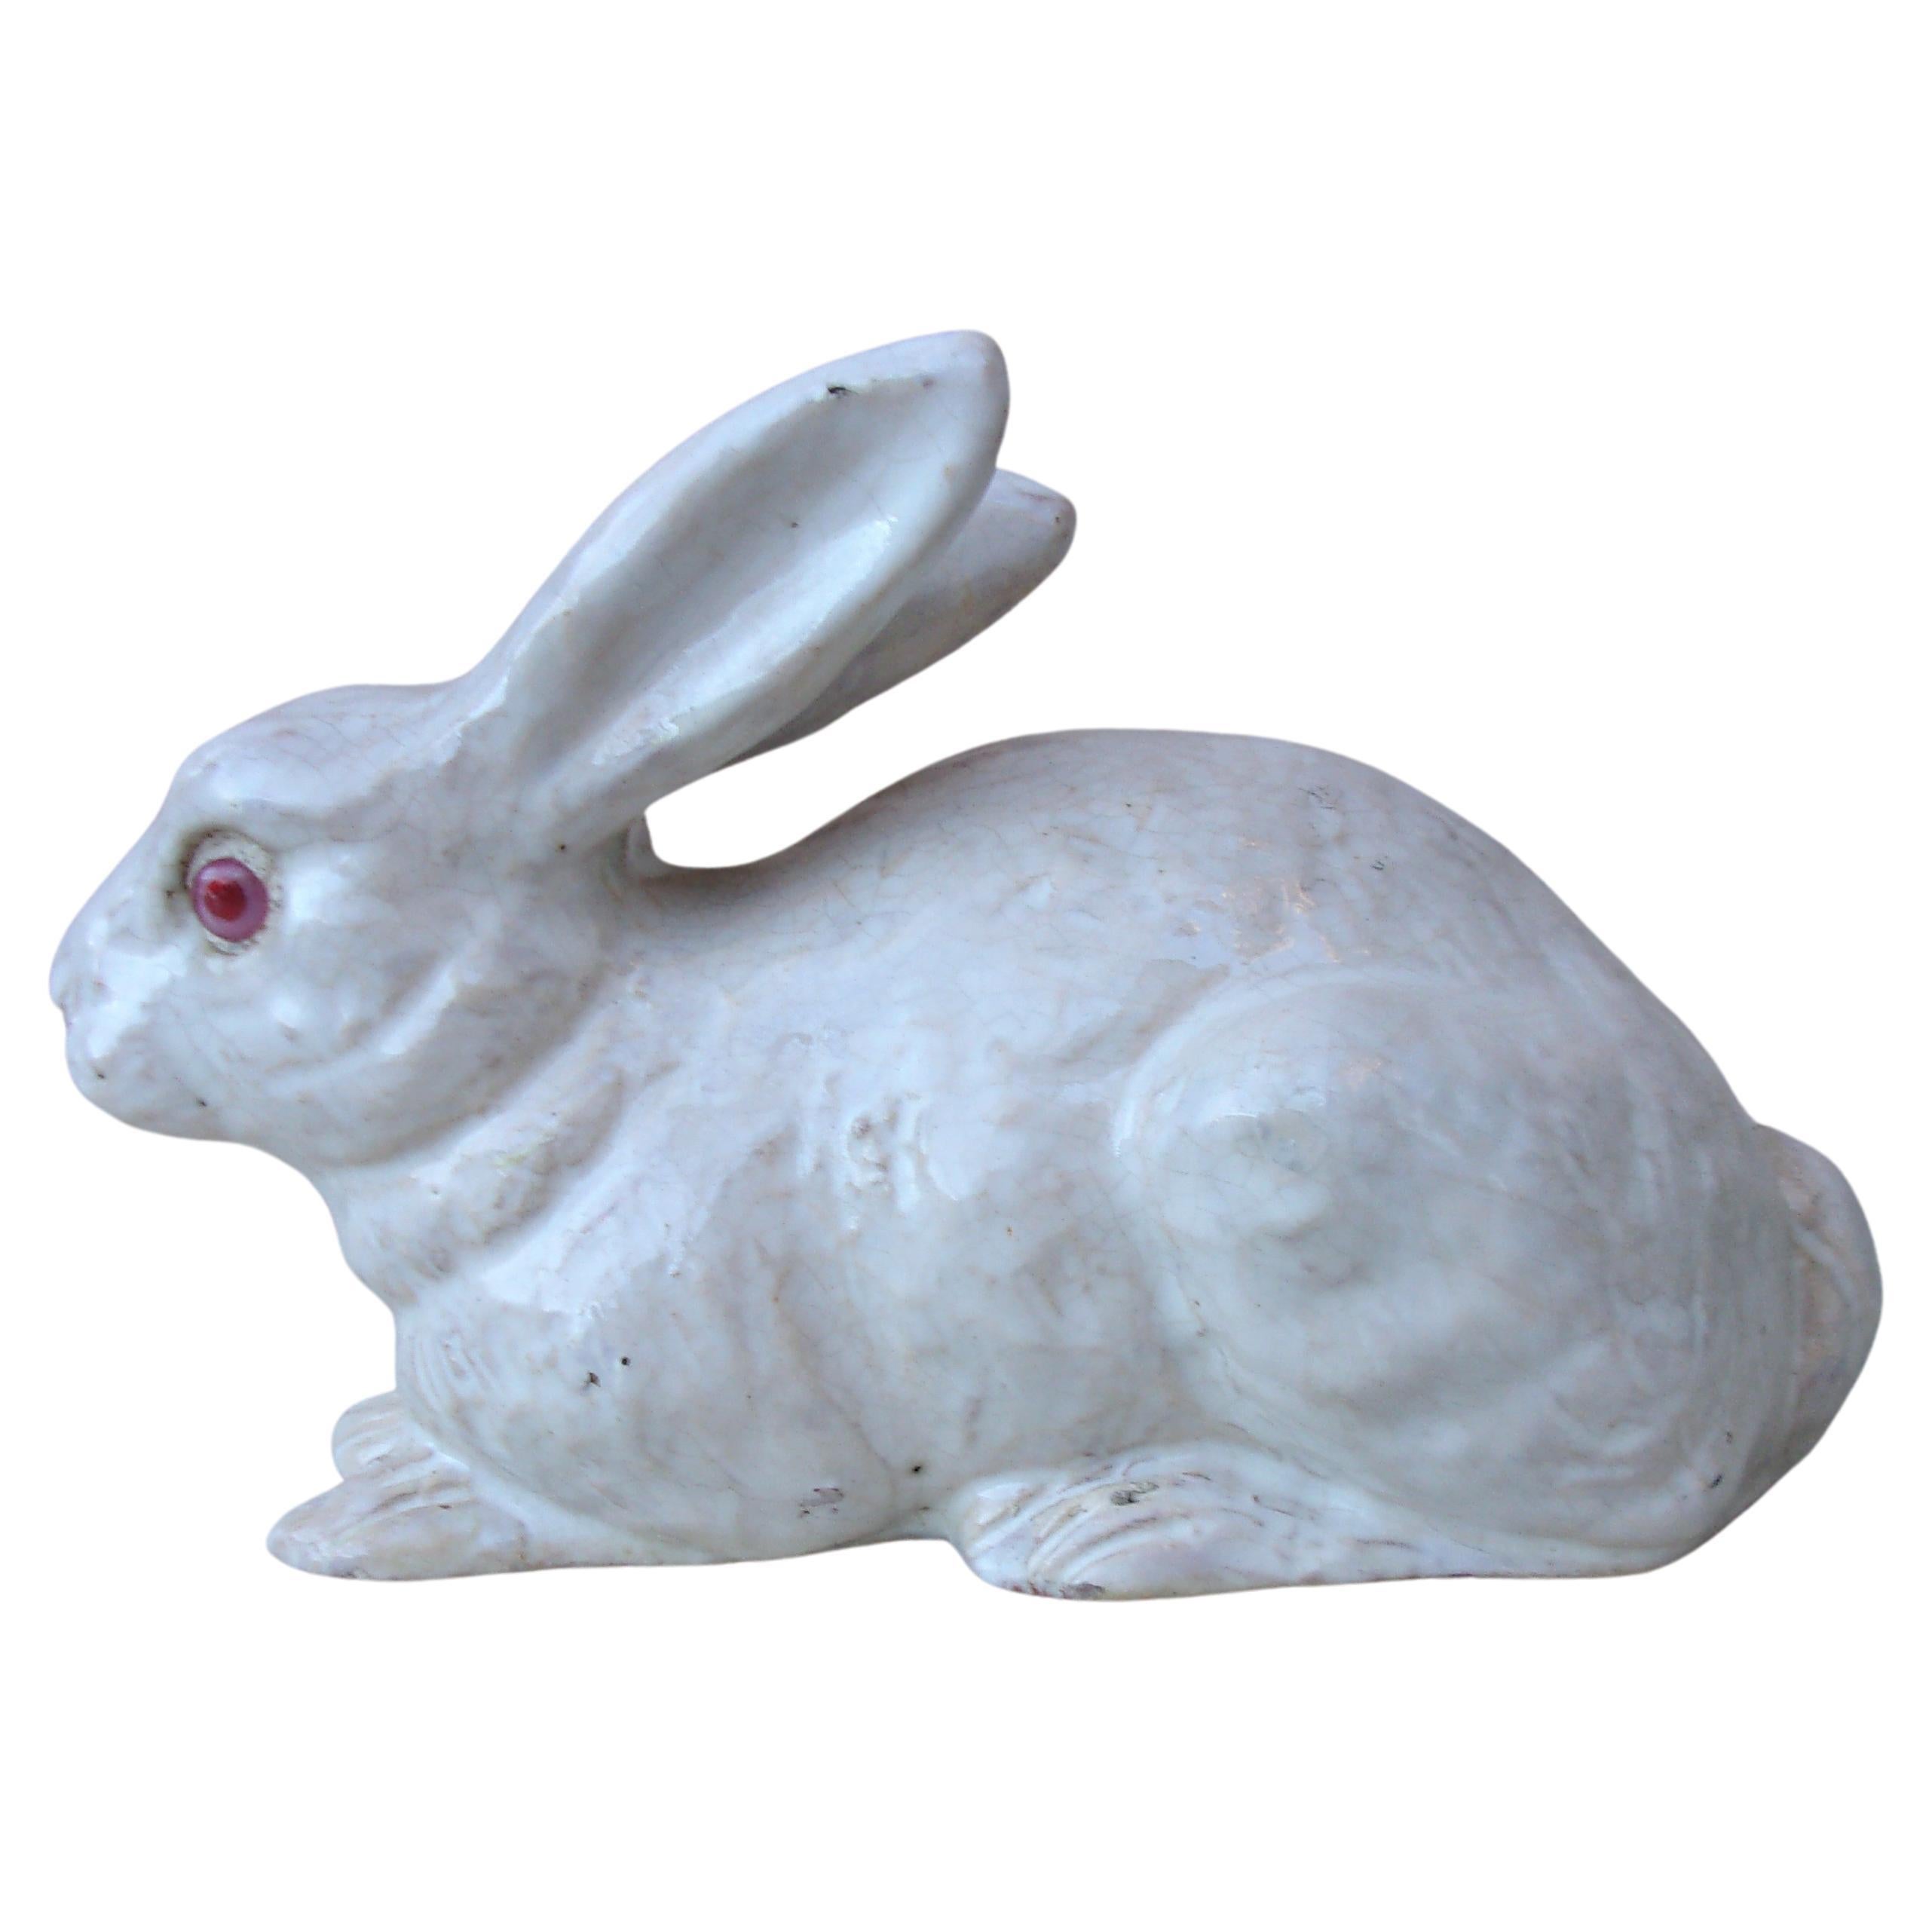 French White Terracotta Majolica Rabbit Bavent, circa 1890